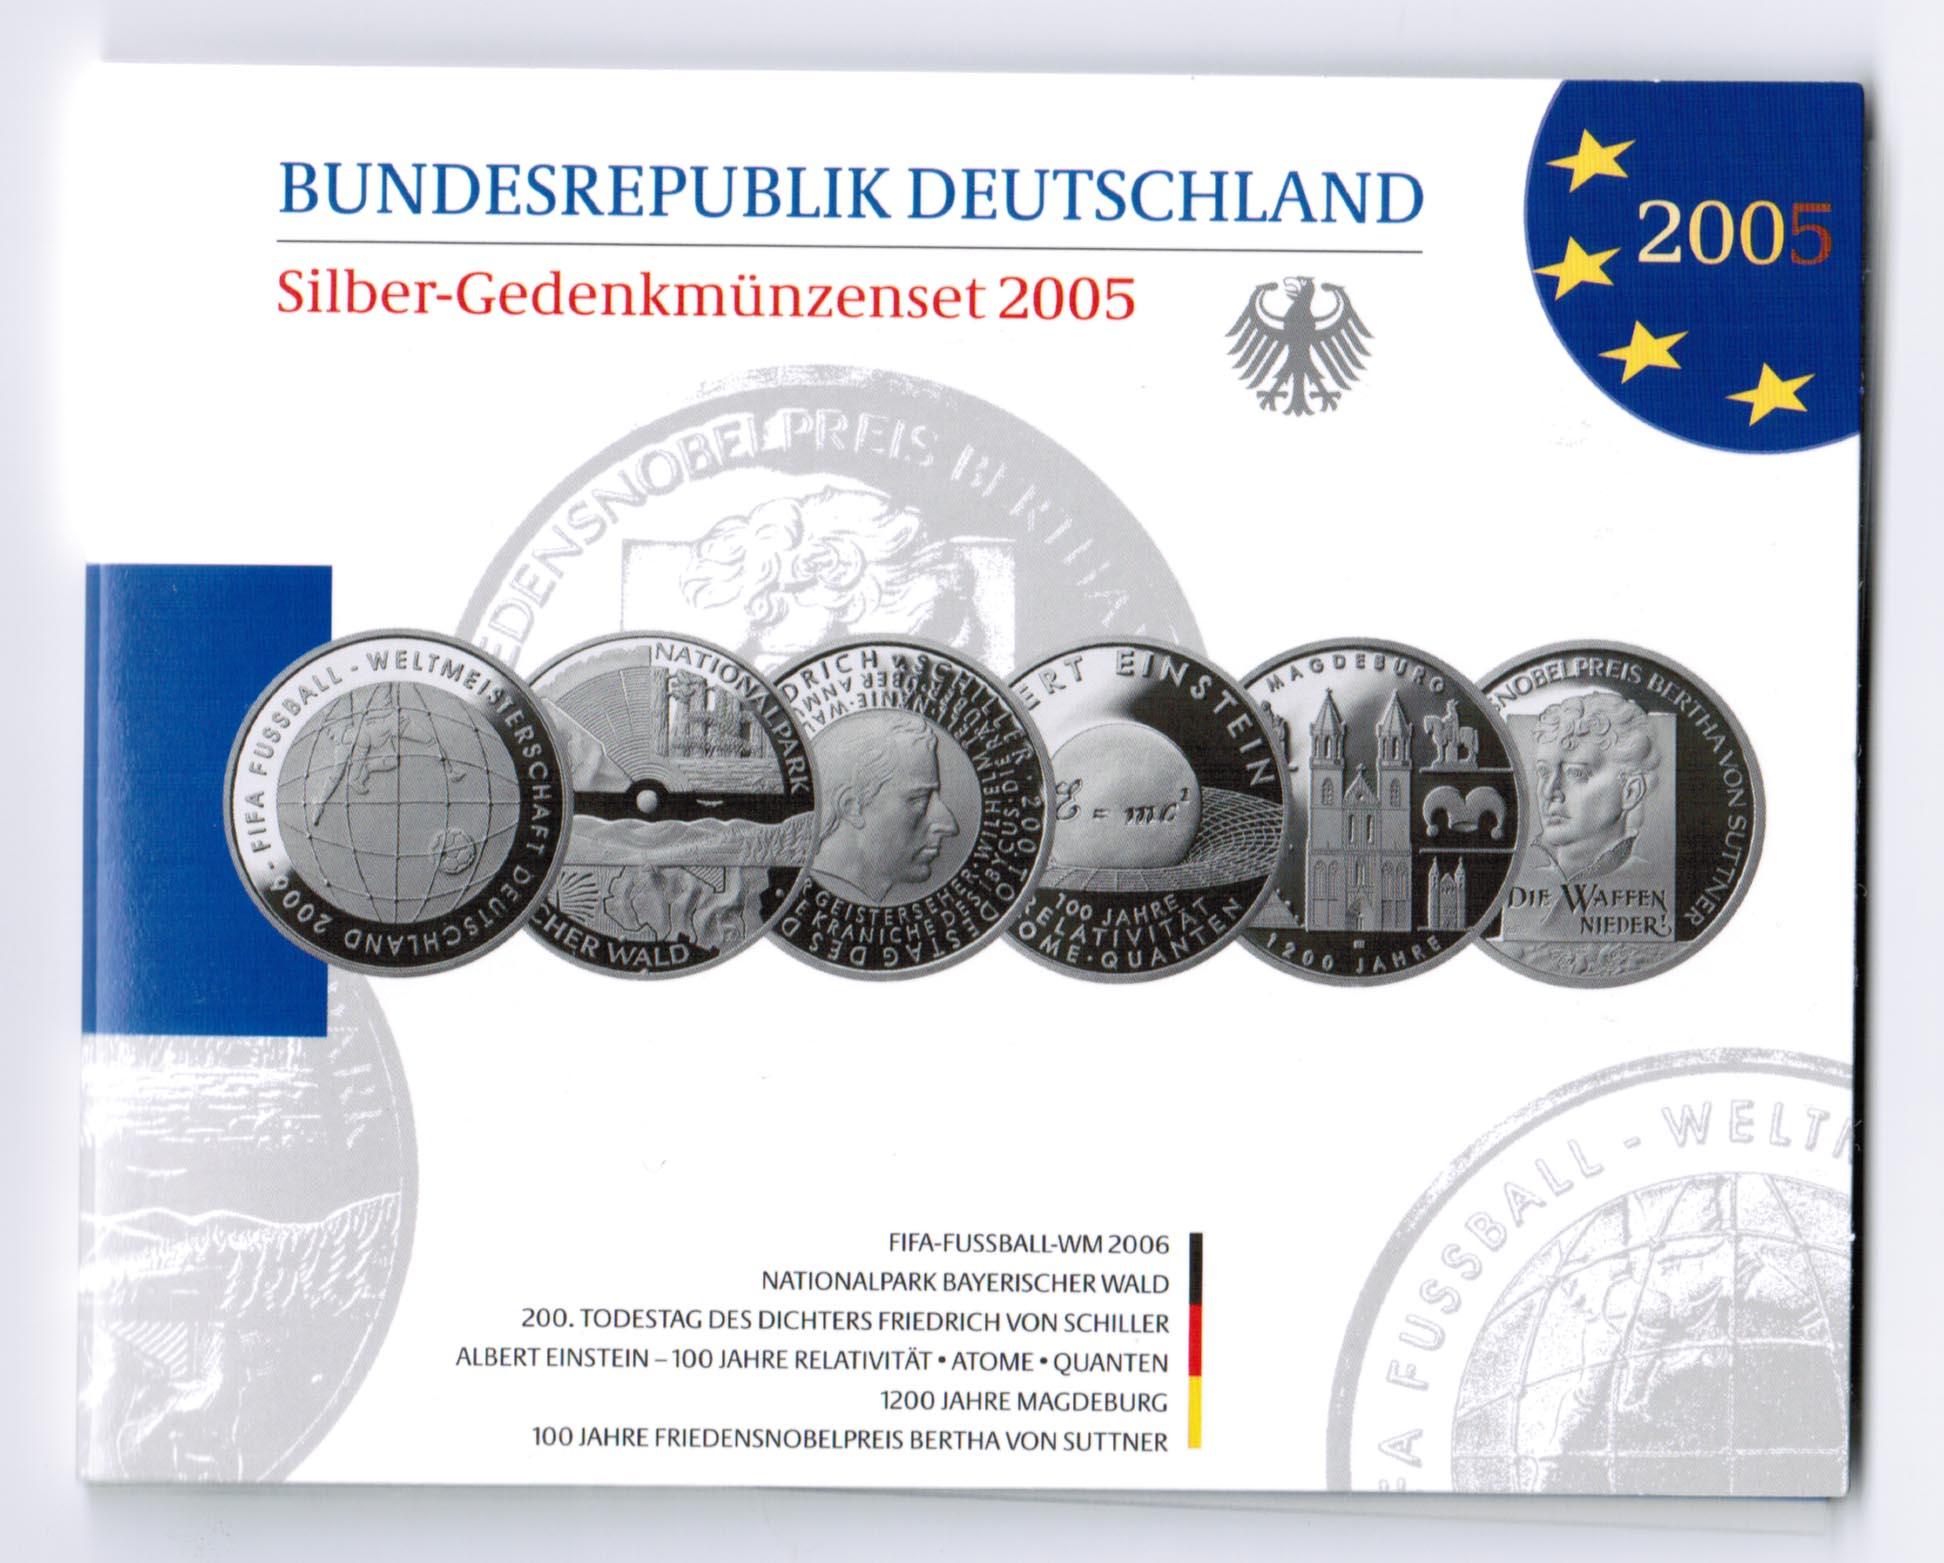 Foto Bundesrepublik Deutschland Offizieller Blister mit 10 Euro Gedenkmz 20 foto 85506